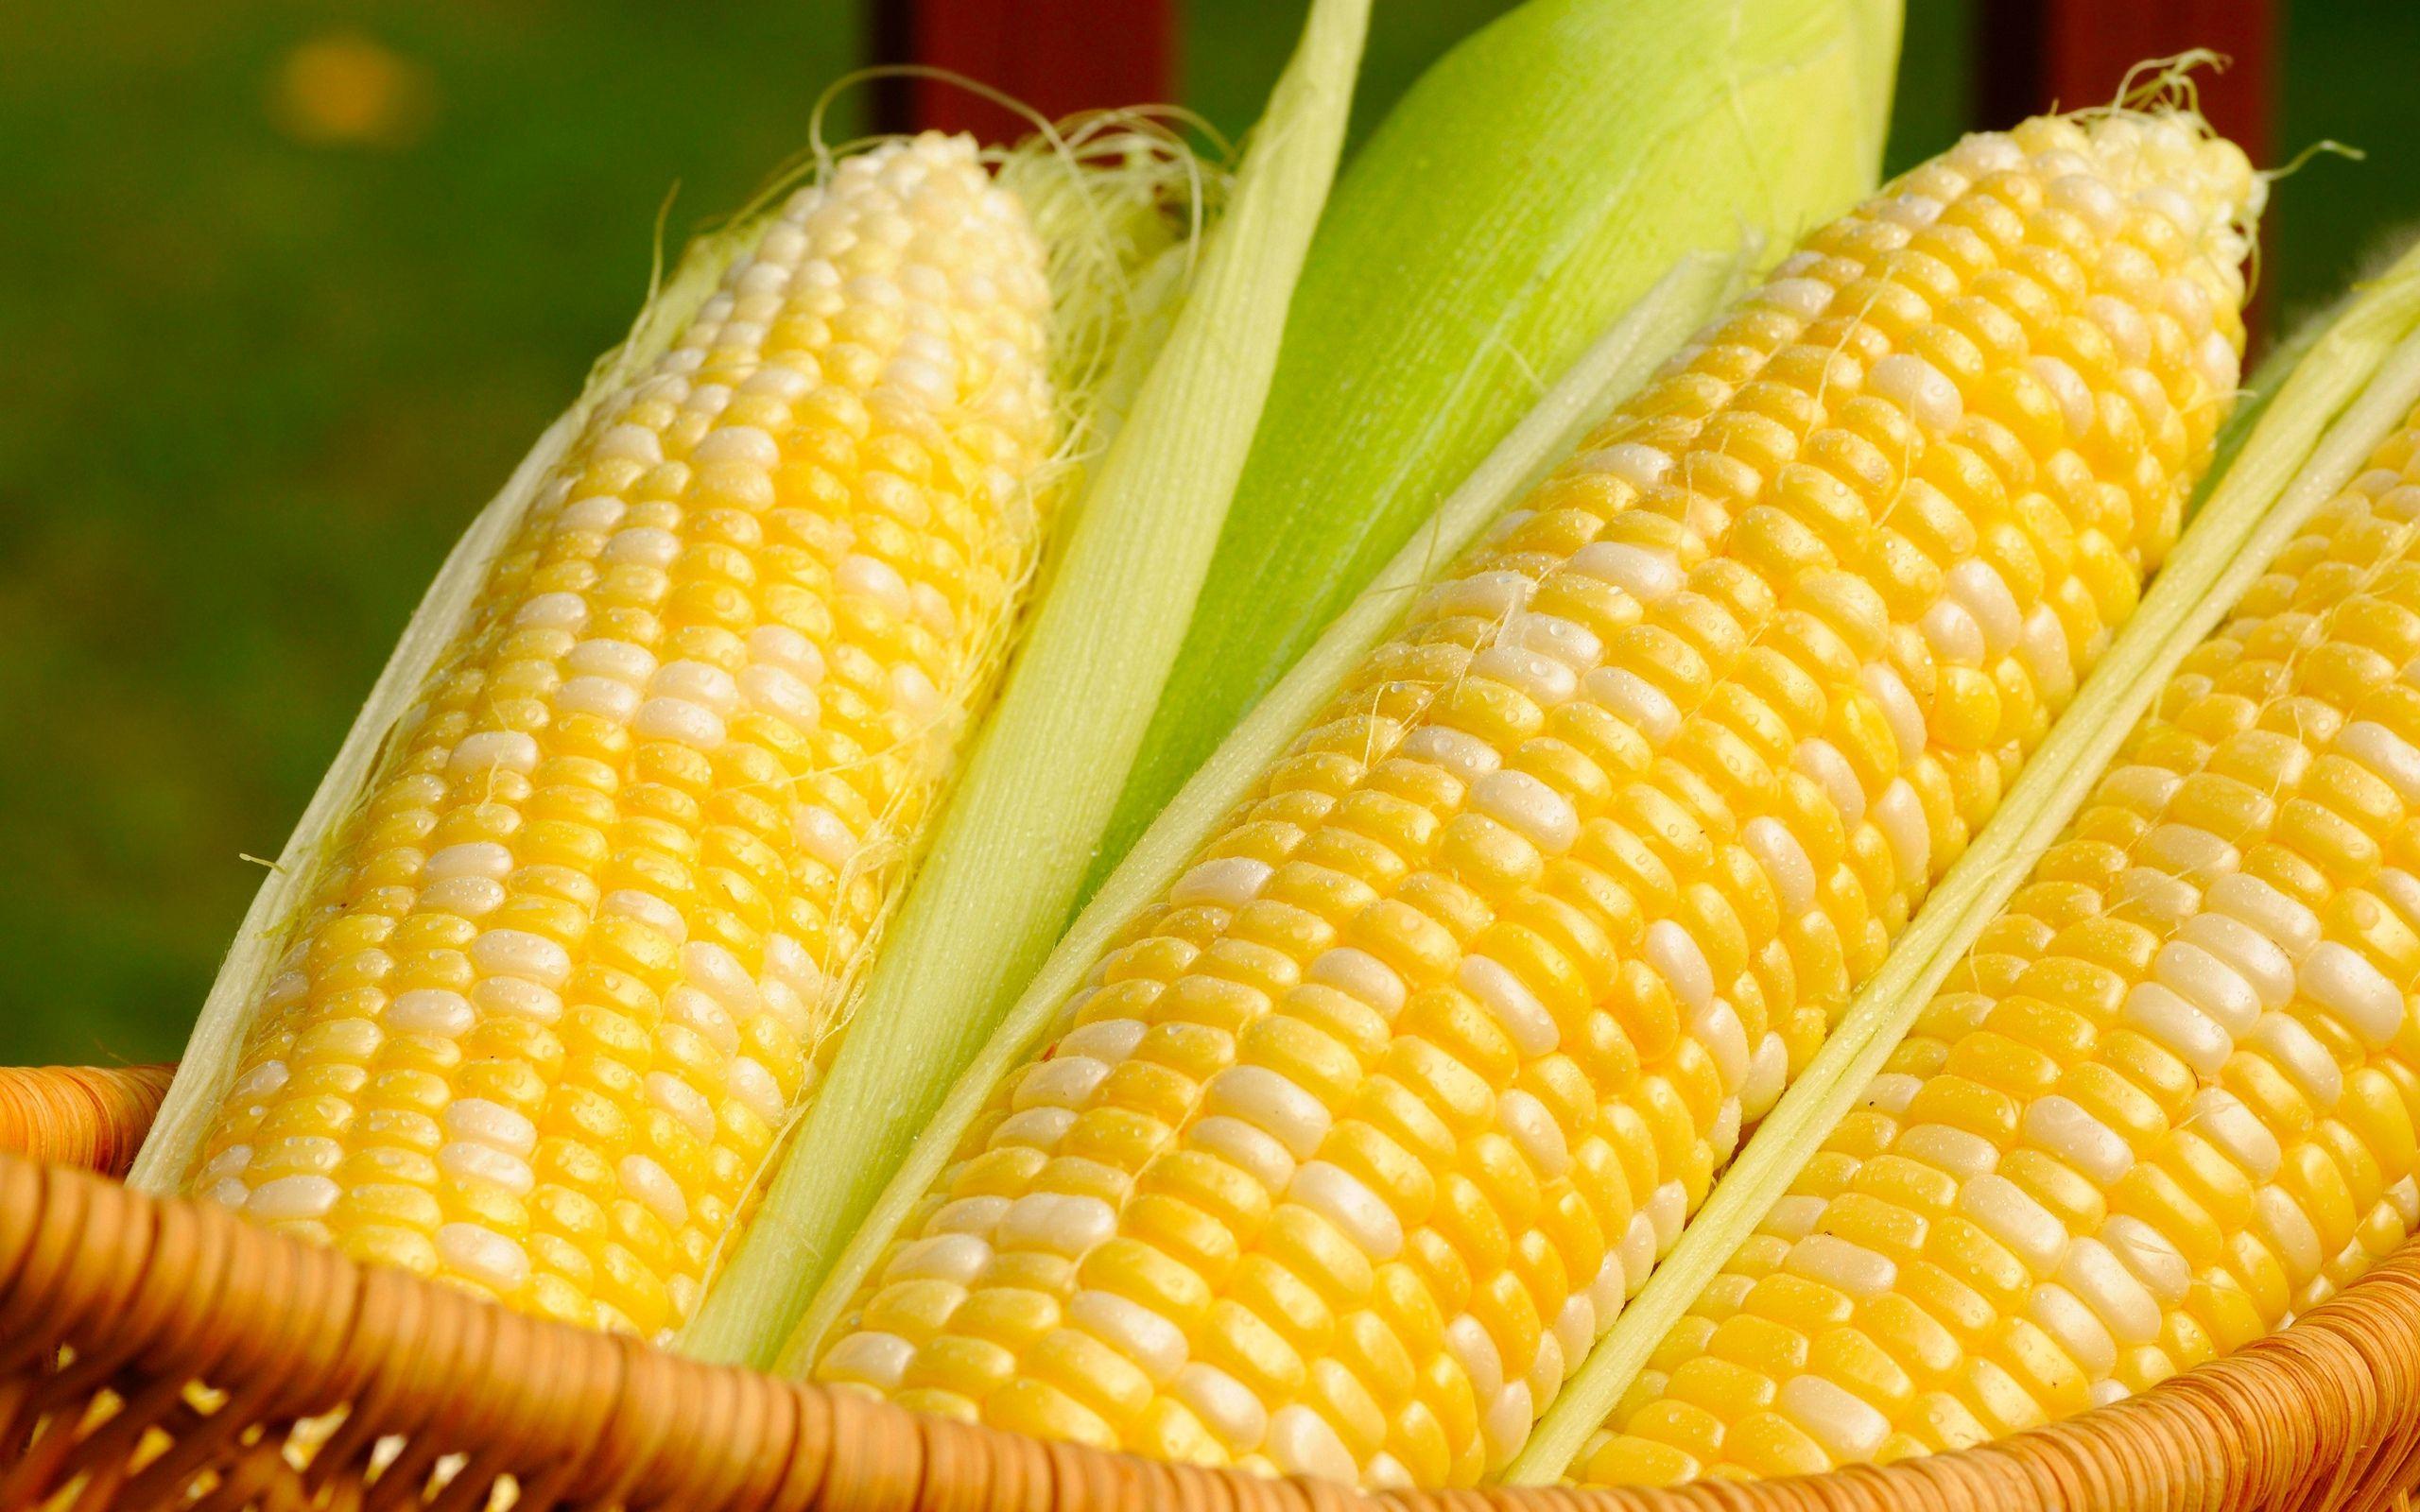 Corn Vector Art & Graphics | freevector.com